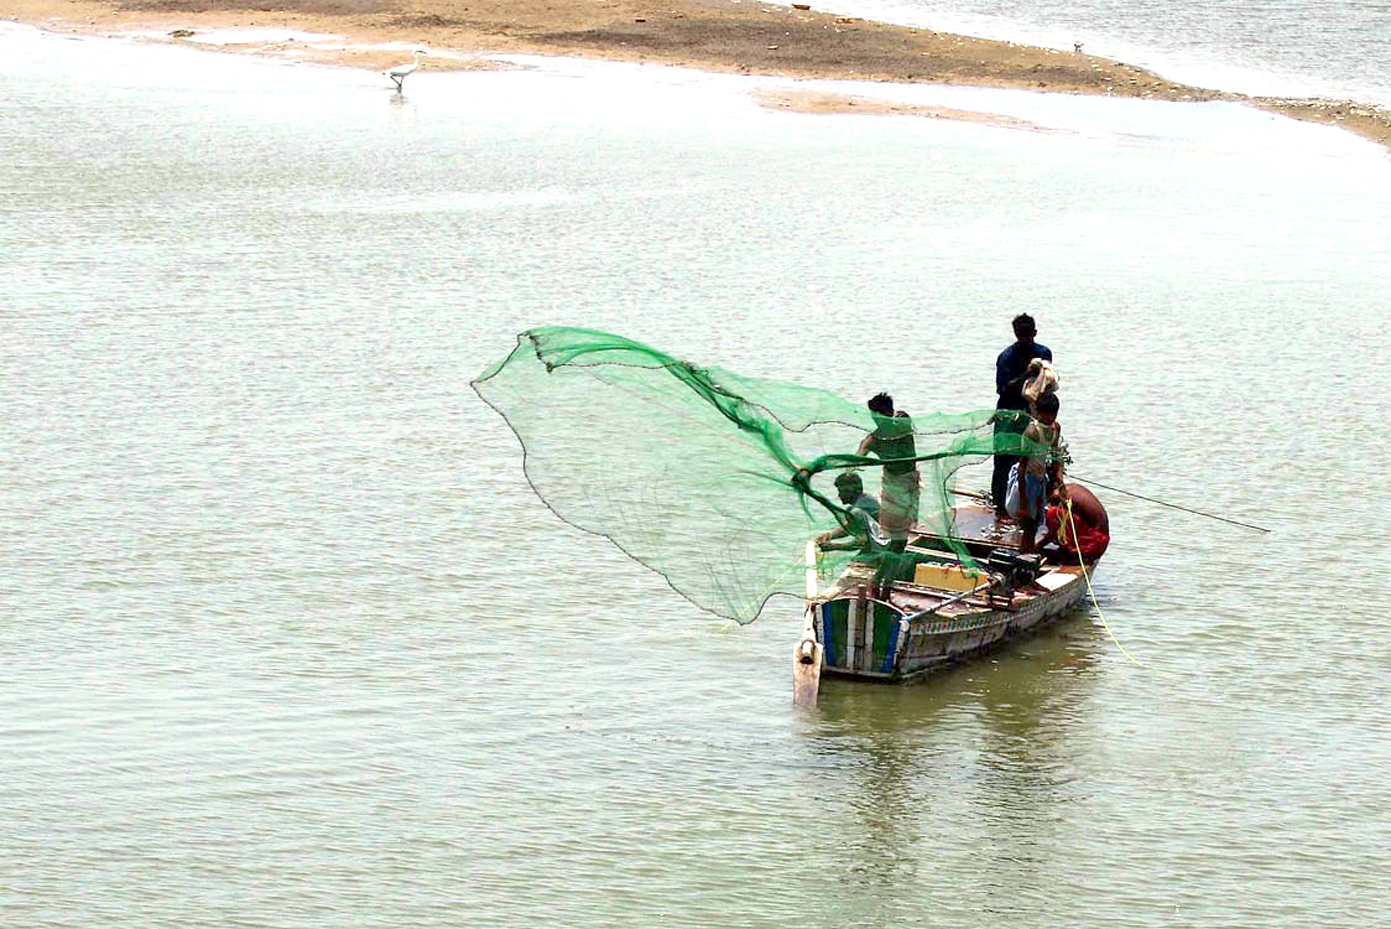 حیدرآباد: ماہی گیر دریا سندھ میں مچھلی کا شکار کرنے کے لیے جال پانی میں پھینک رہے ہیں